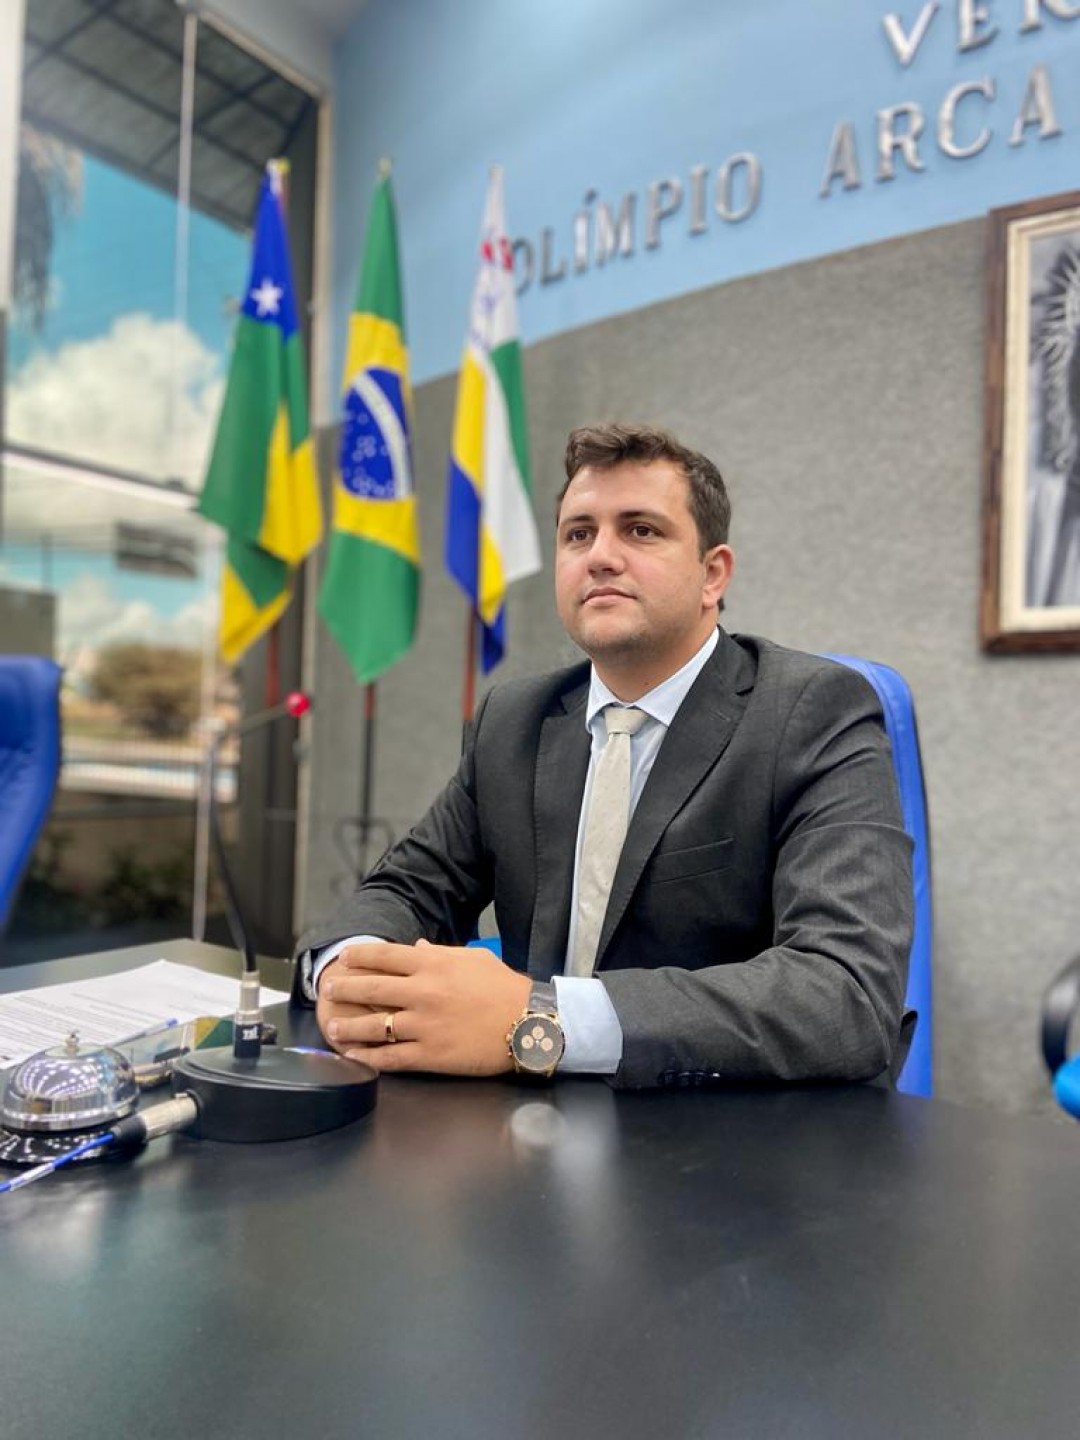 Marcos Oliveira renuncia ao cargo de vereador da Câmara de Itabaiana